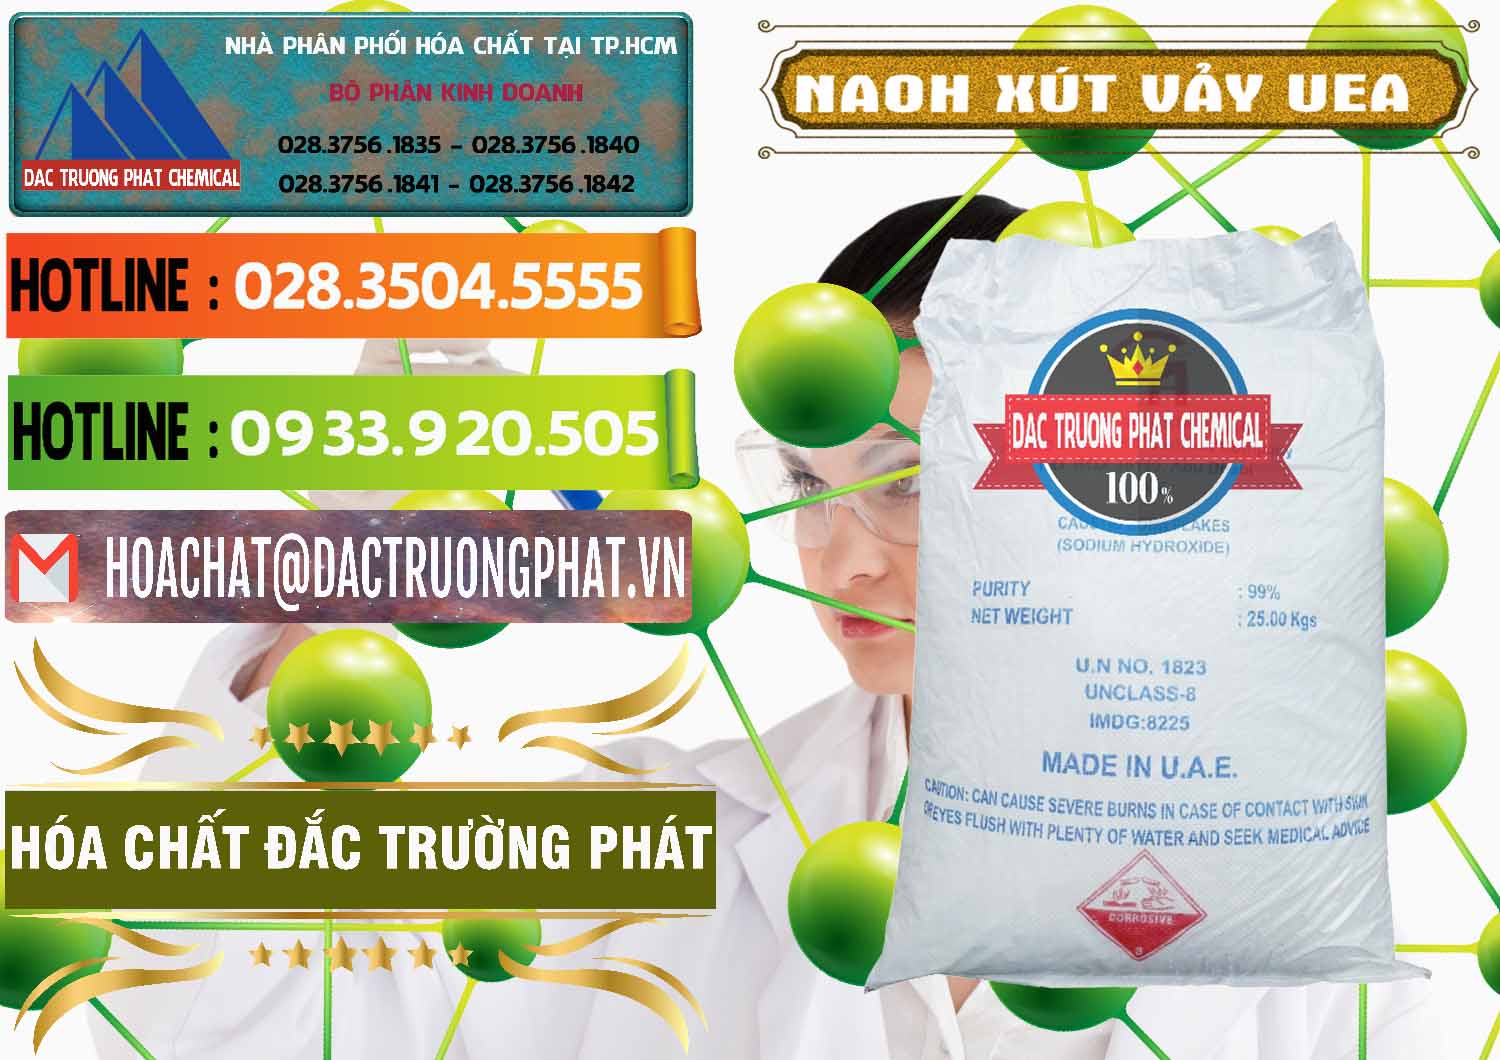 Đơn vị chuyên bán - phân phối Xút Vảy - NaOH Vảy UAE Iran - 0432 - Nơi cung ứng và phân phối hóa chất tại TP.HCM - cungcaphoachat.com.vn